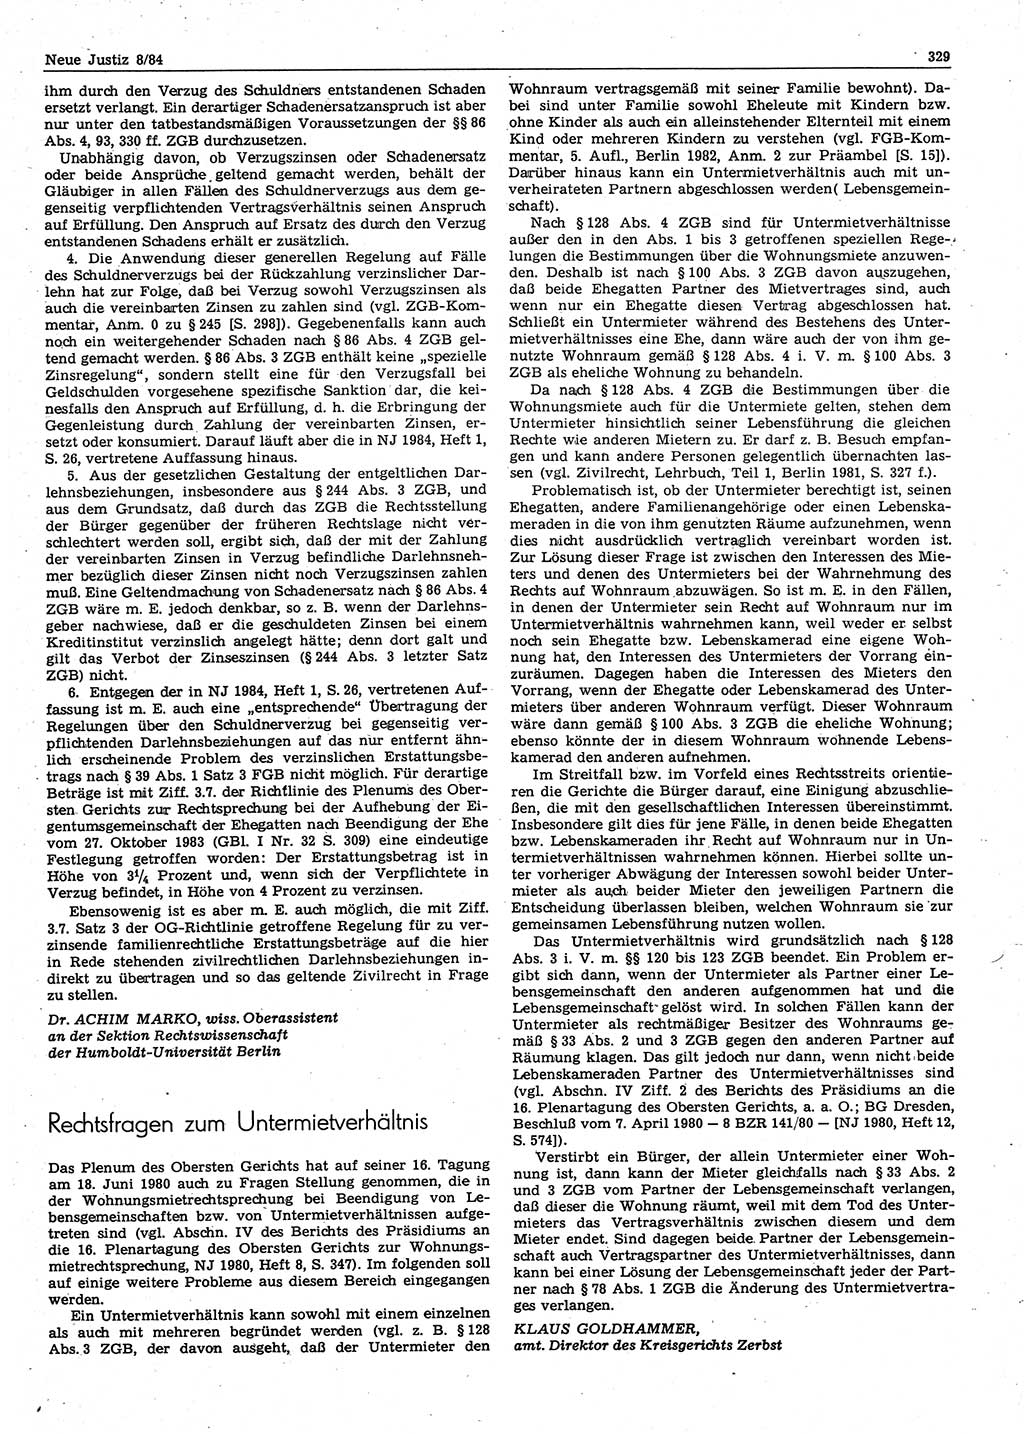 Neue Justiz (NJ), Zeitschrift für sozialistisches Recht und Gesetzlichkeit [Deutsche Demokratische Republik (DDR)], 38. Jahrgang 1984, Seite 329 (NJ DDR 1984, S. 329)